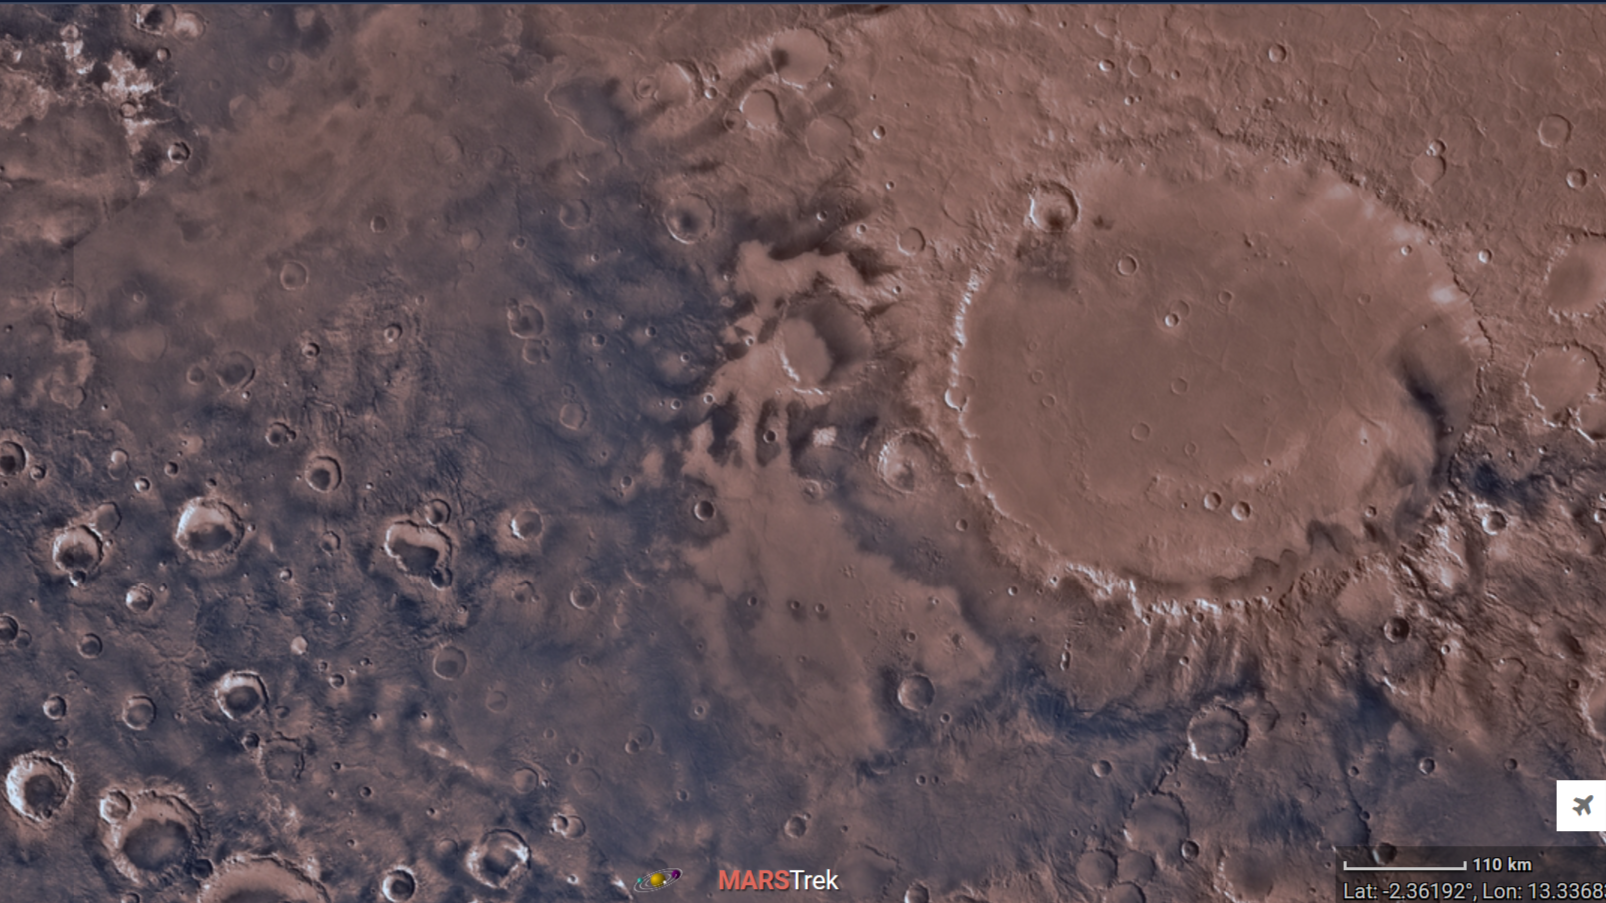 Интерактивная карта Марса появилась в Сети благодаря разработчикам NASA